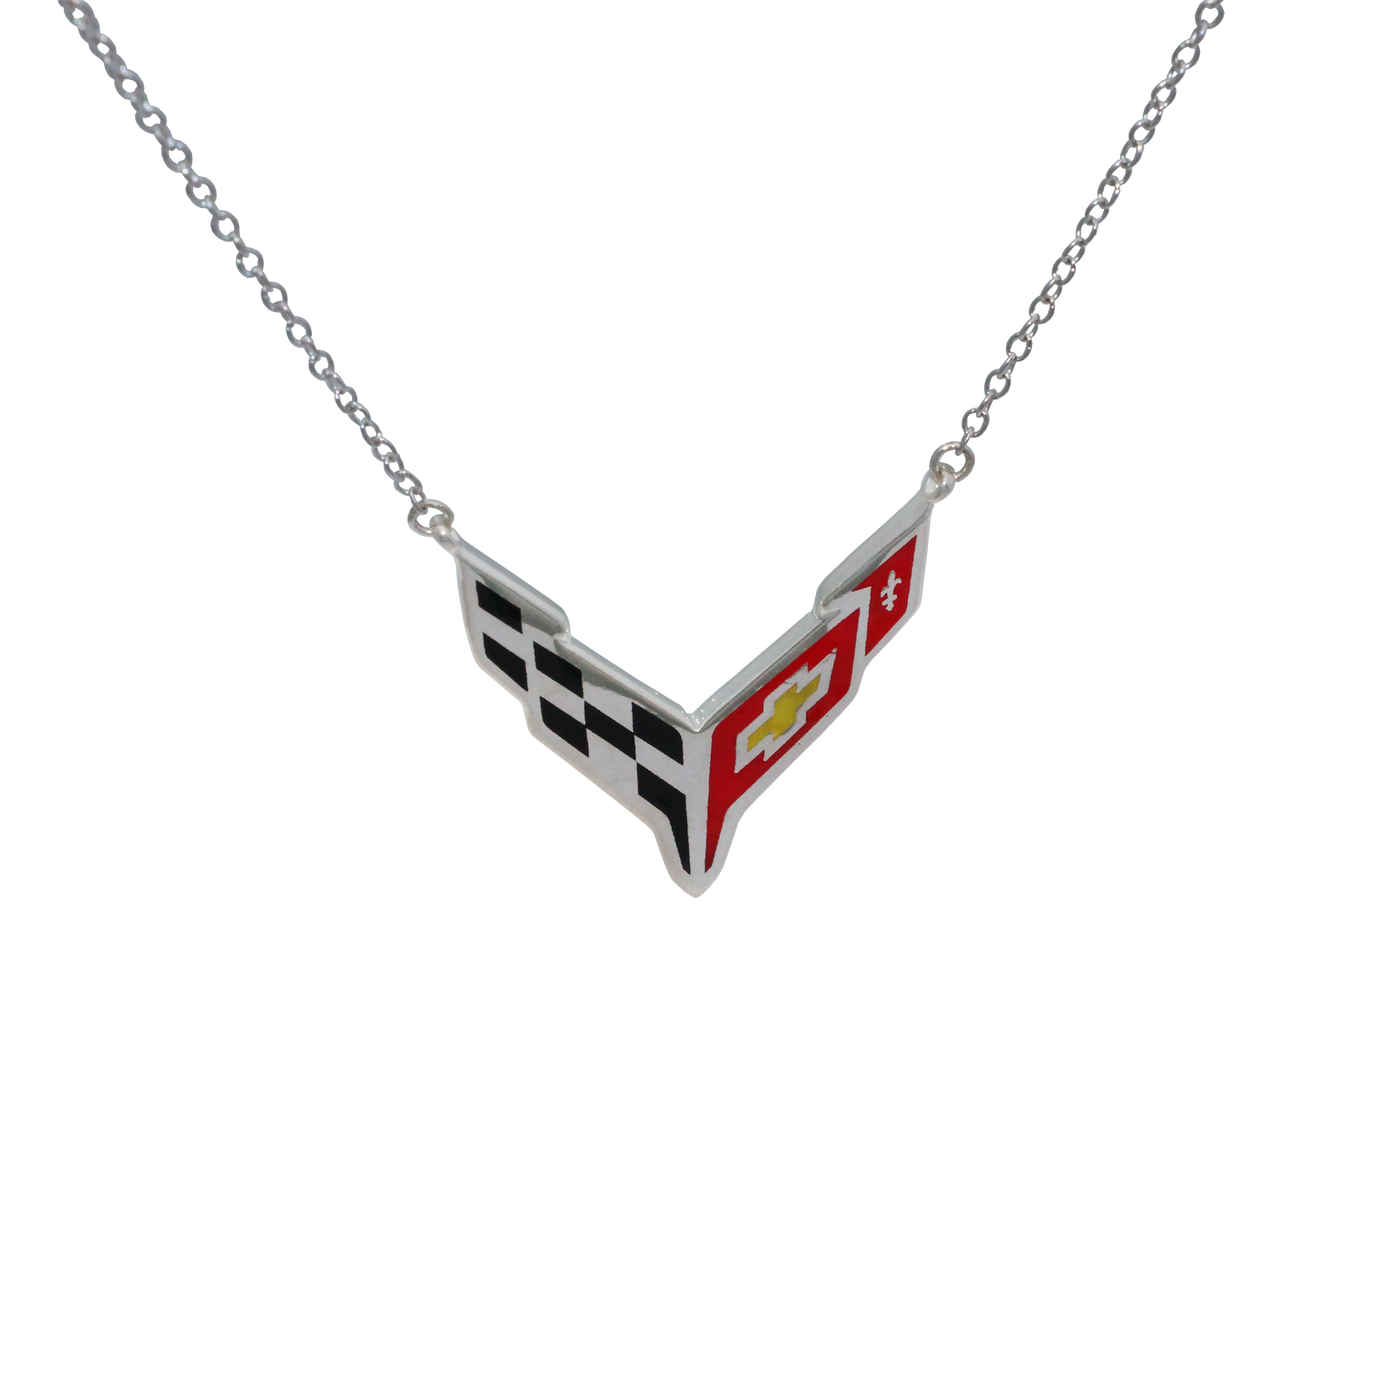 C8 Corvette Emblem Necklace